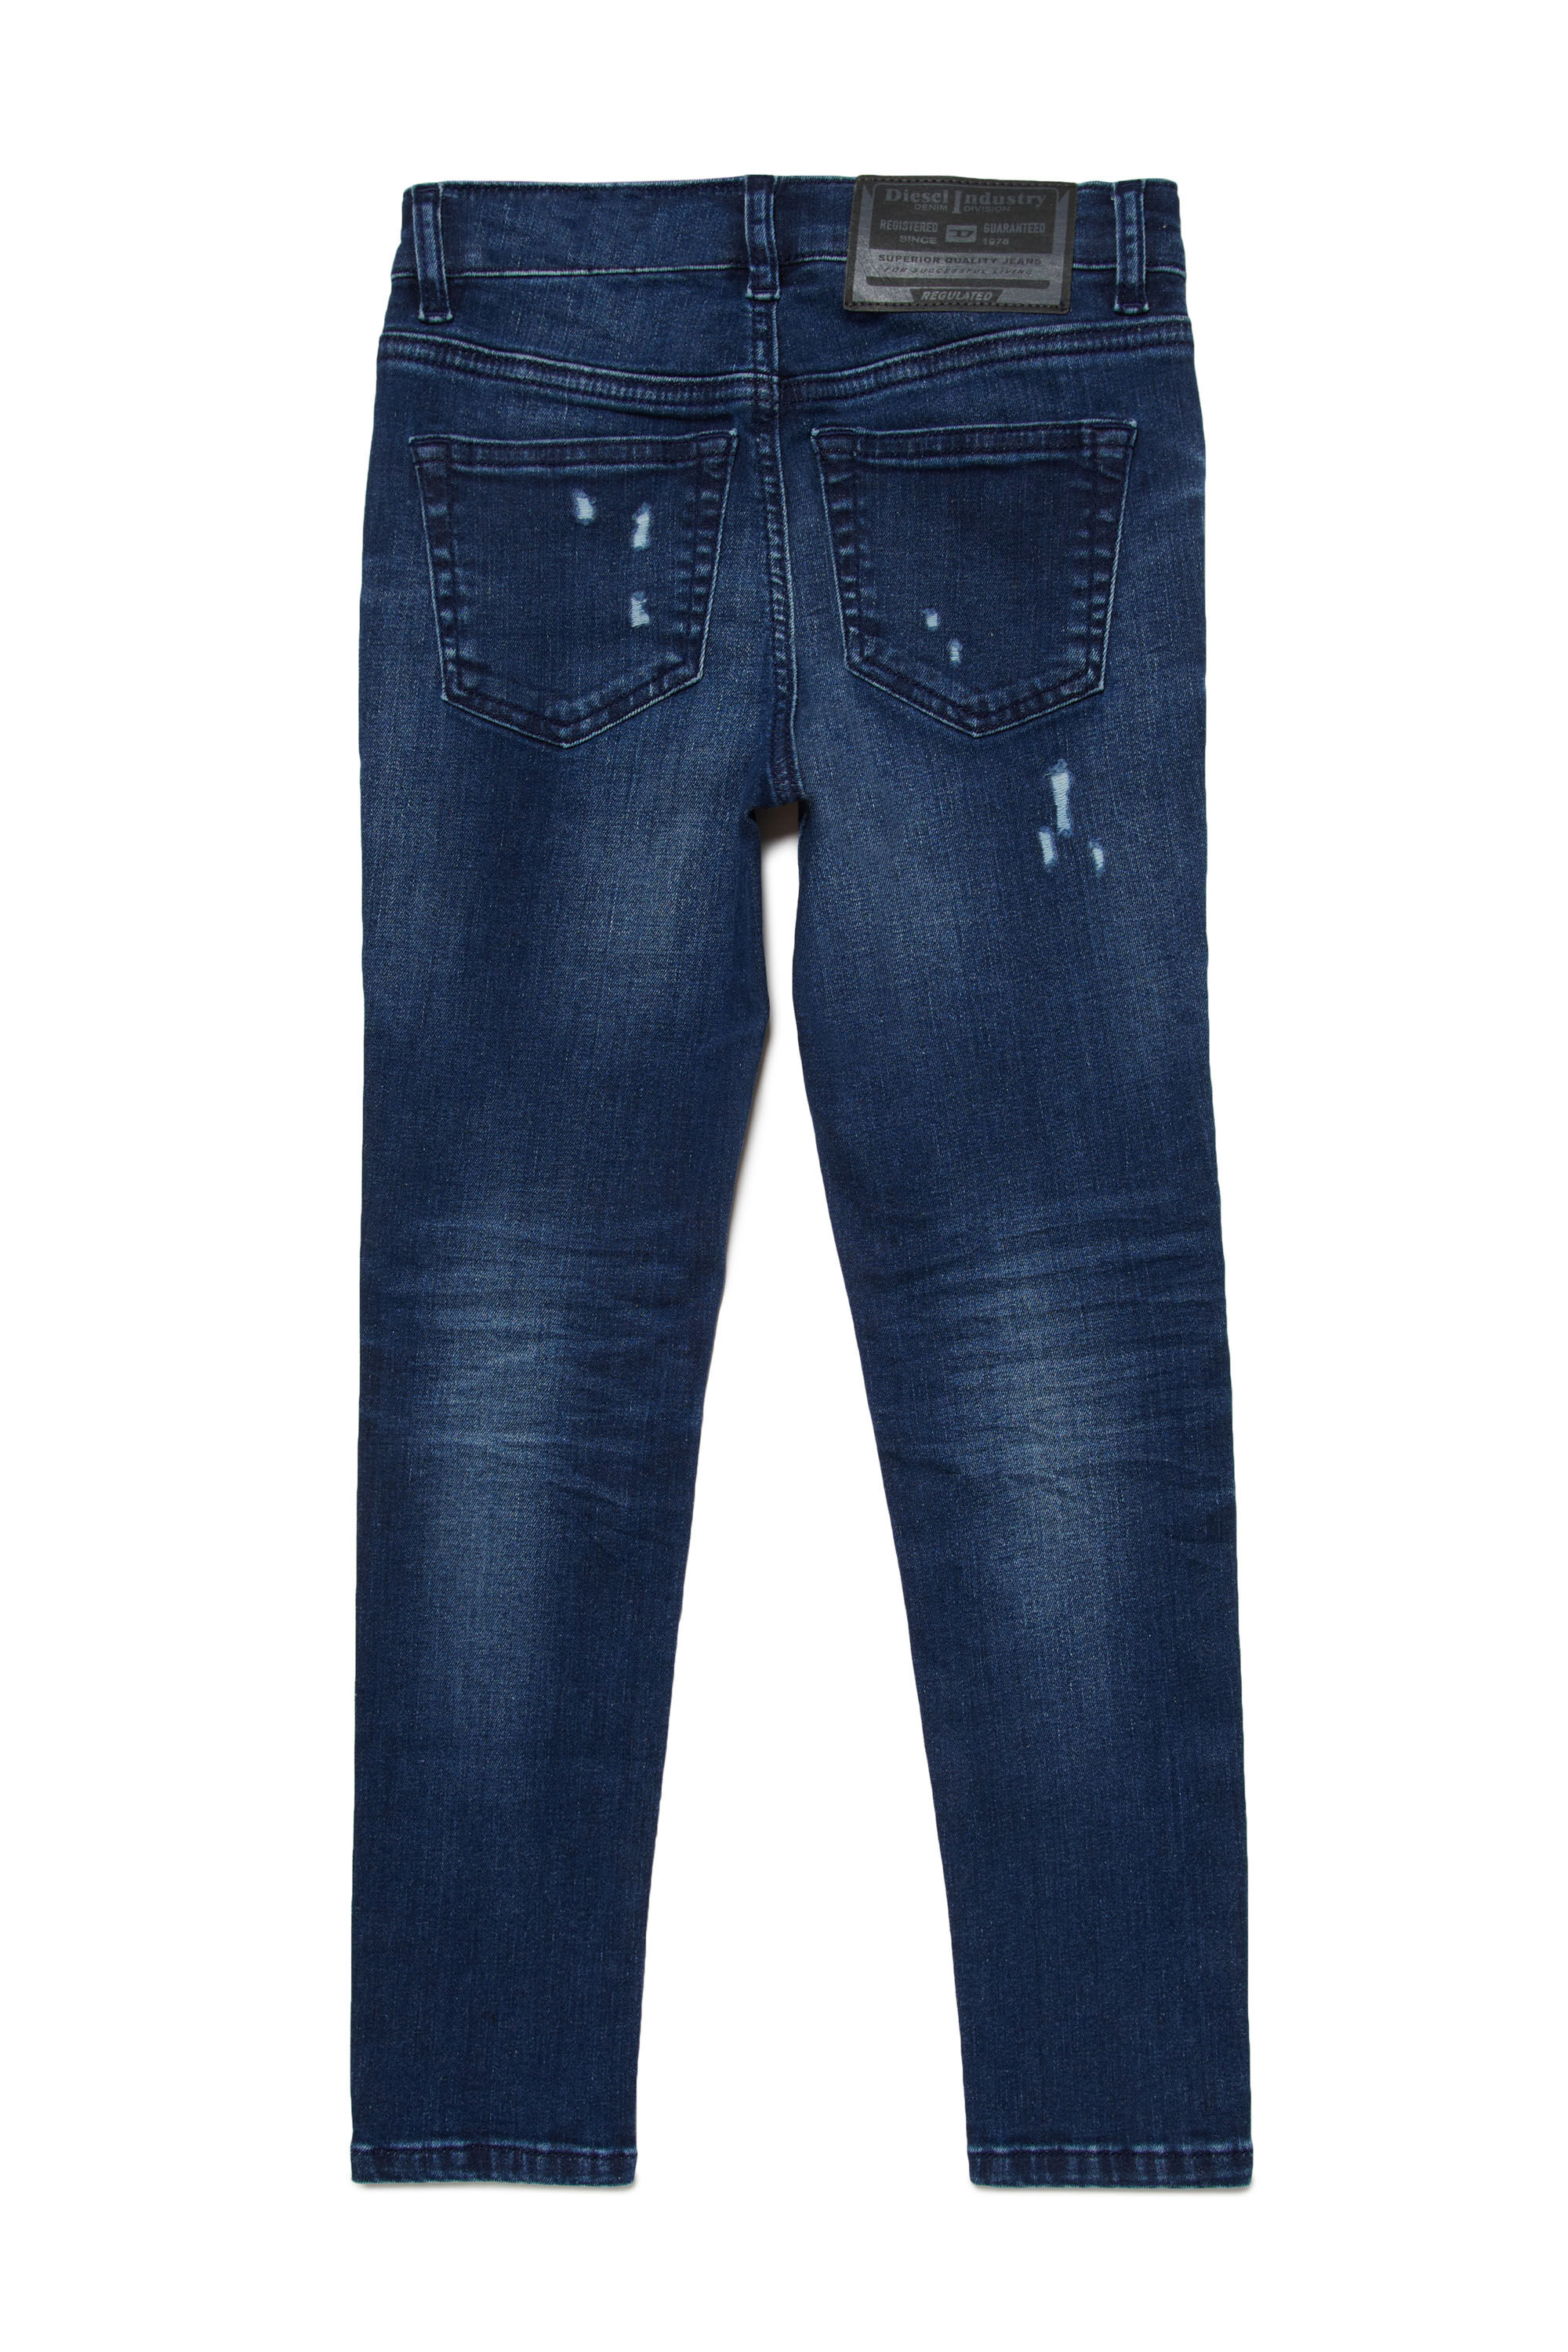 Super skinny Jeans - Slandy | Blue | 4-16 YEARS Girls | Diesel